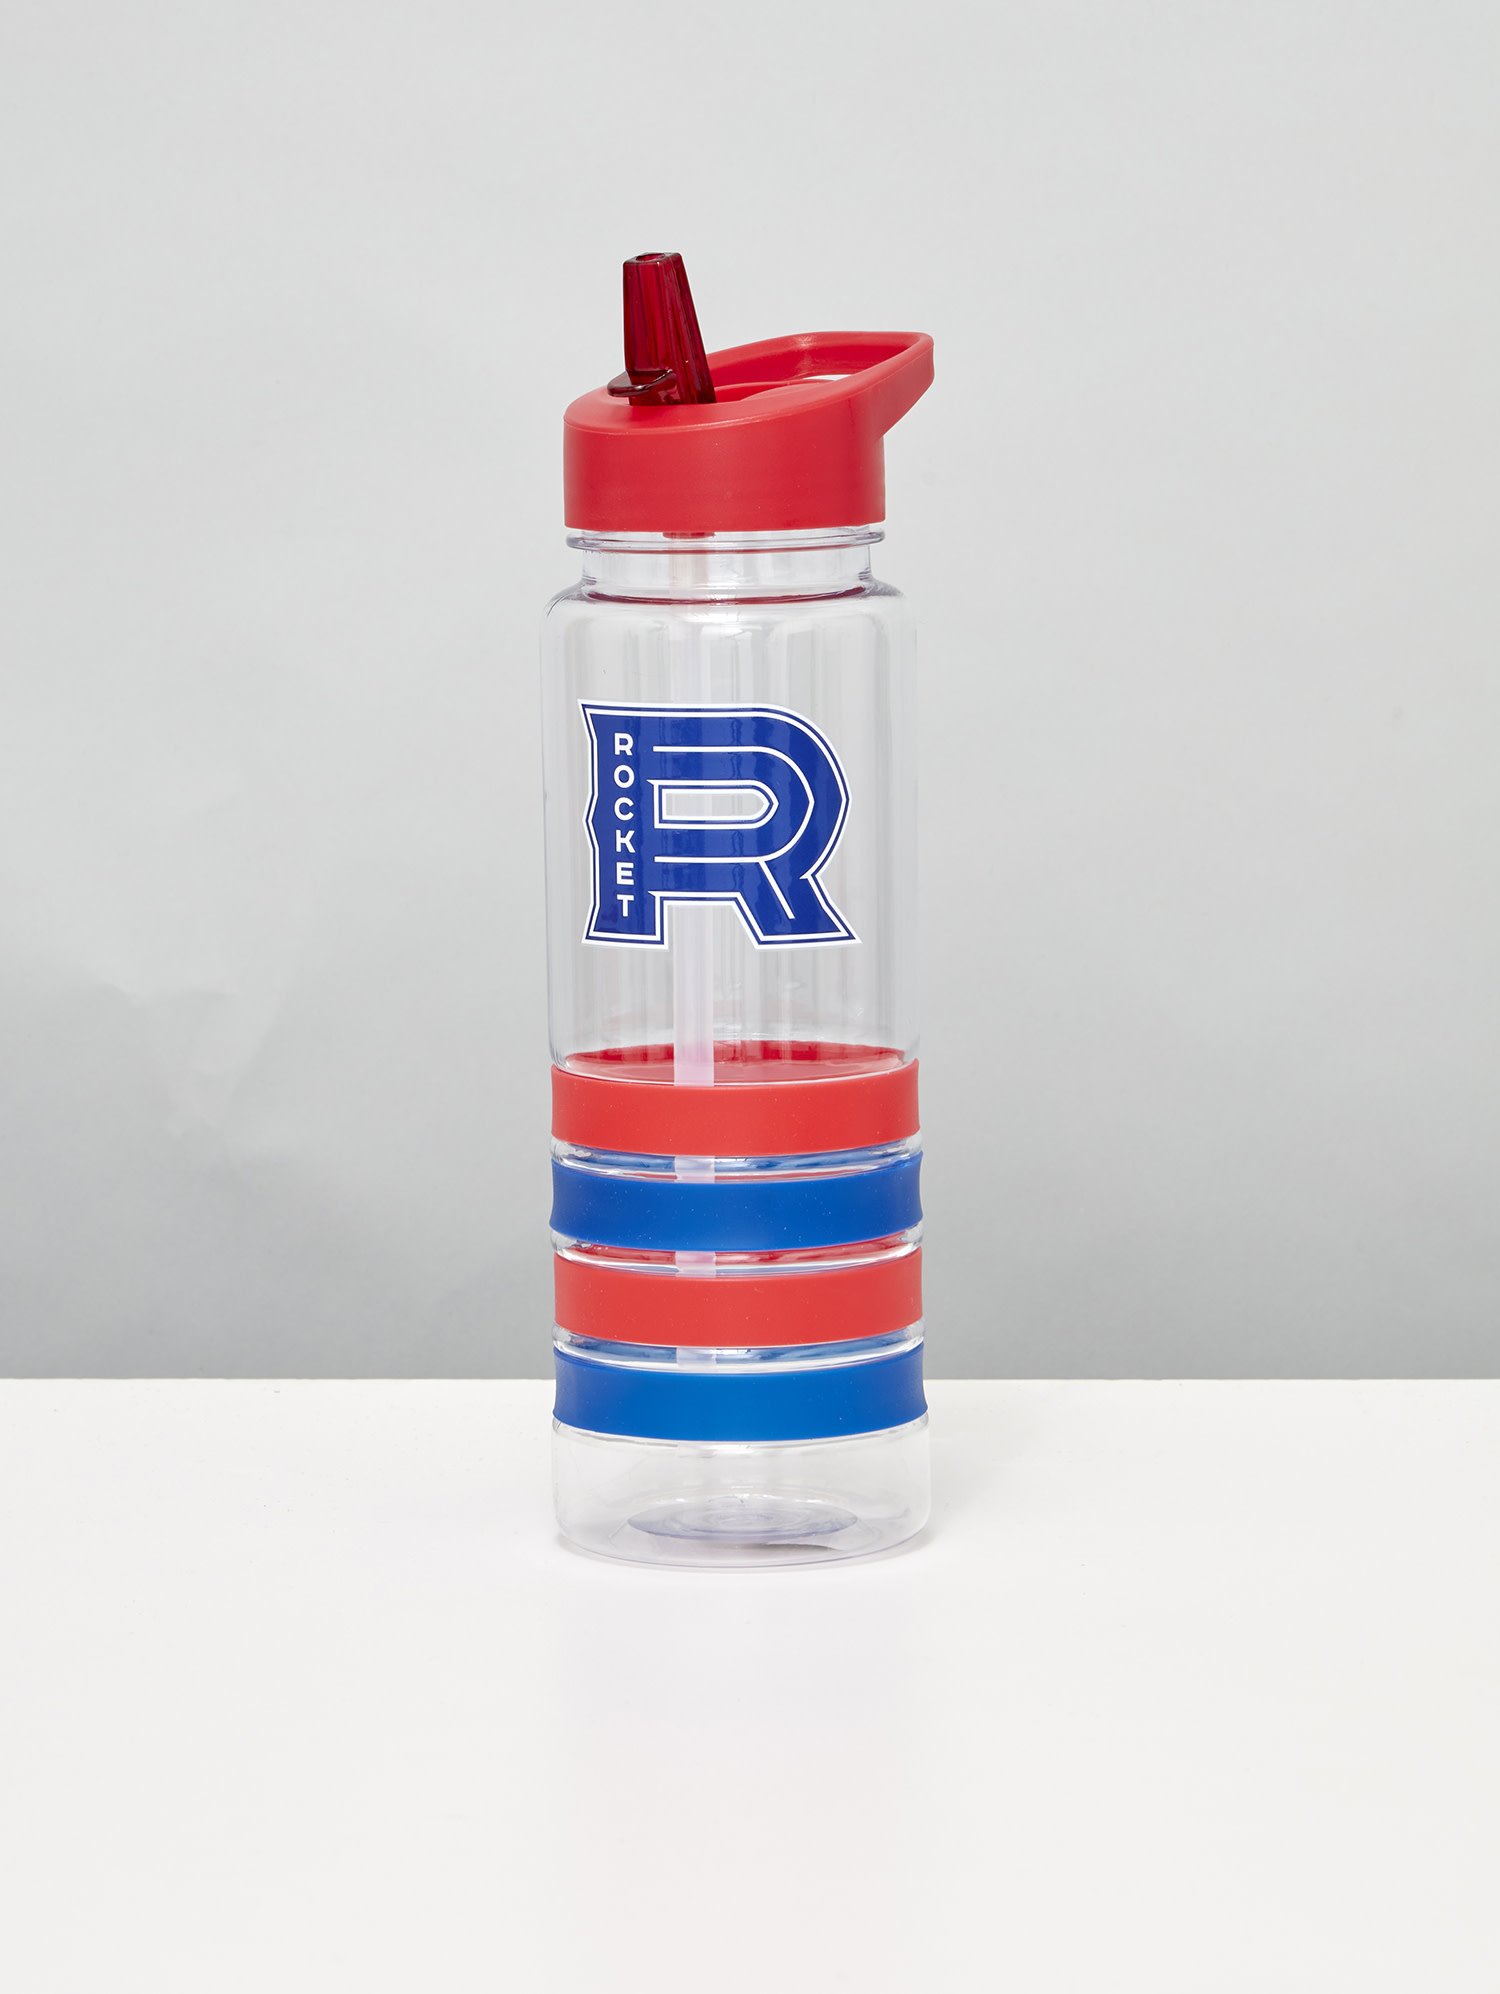 Recycled Steel Bottle – Rockay